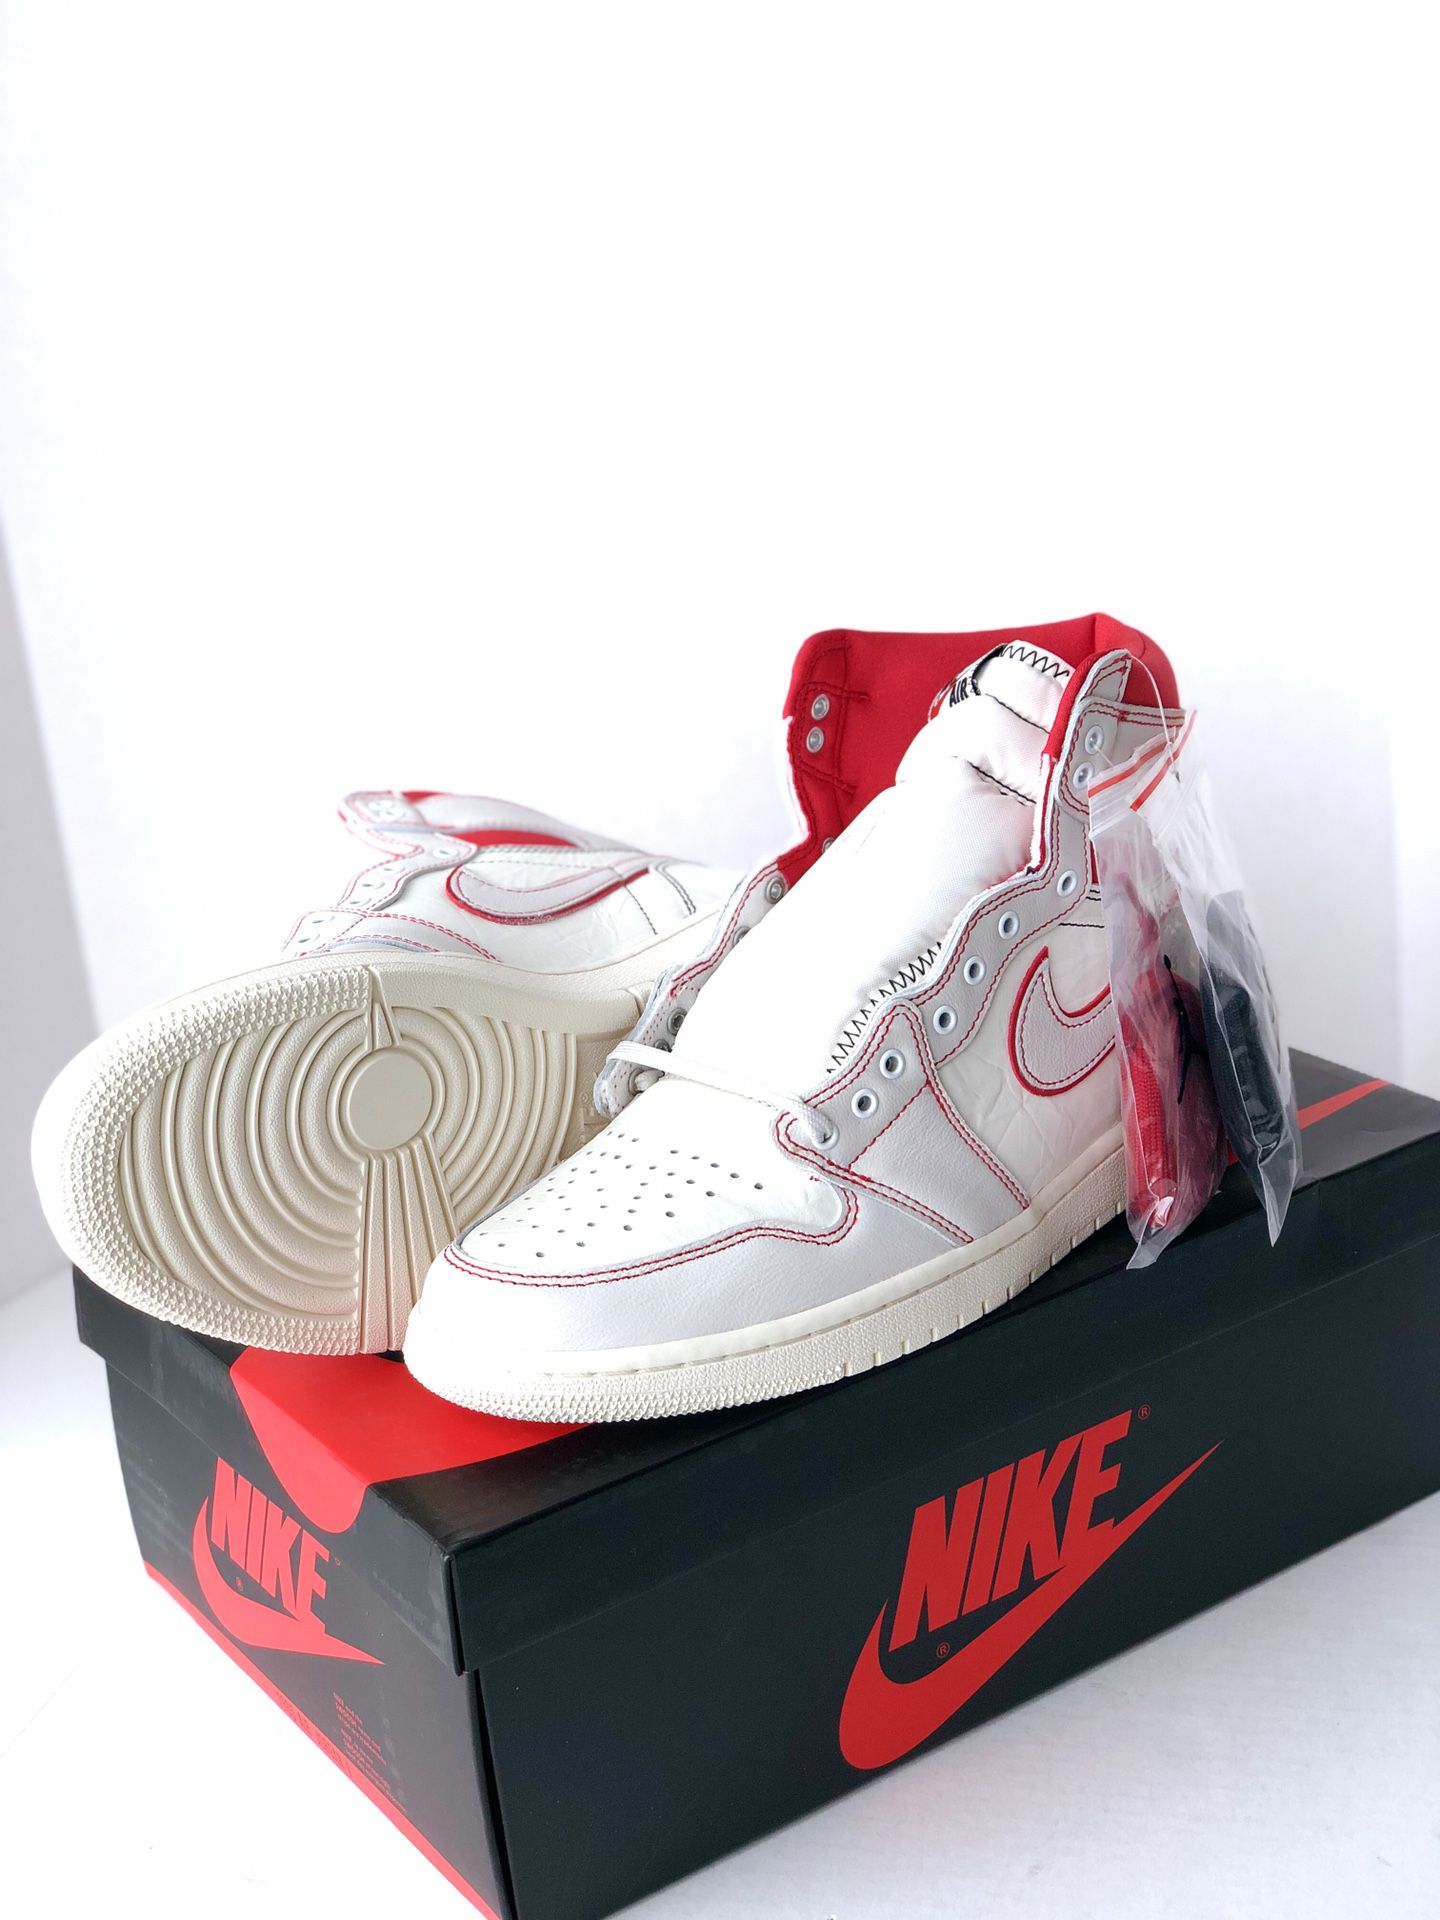 Air Jordan 1 Retro High OG Phantom Gym Red Shoe Size 10.5